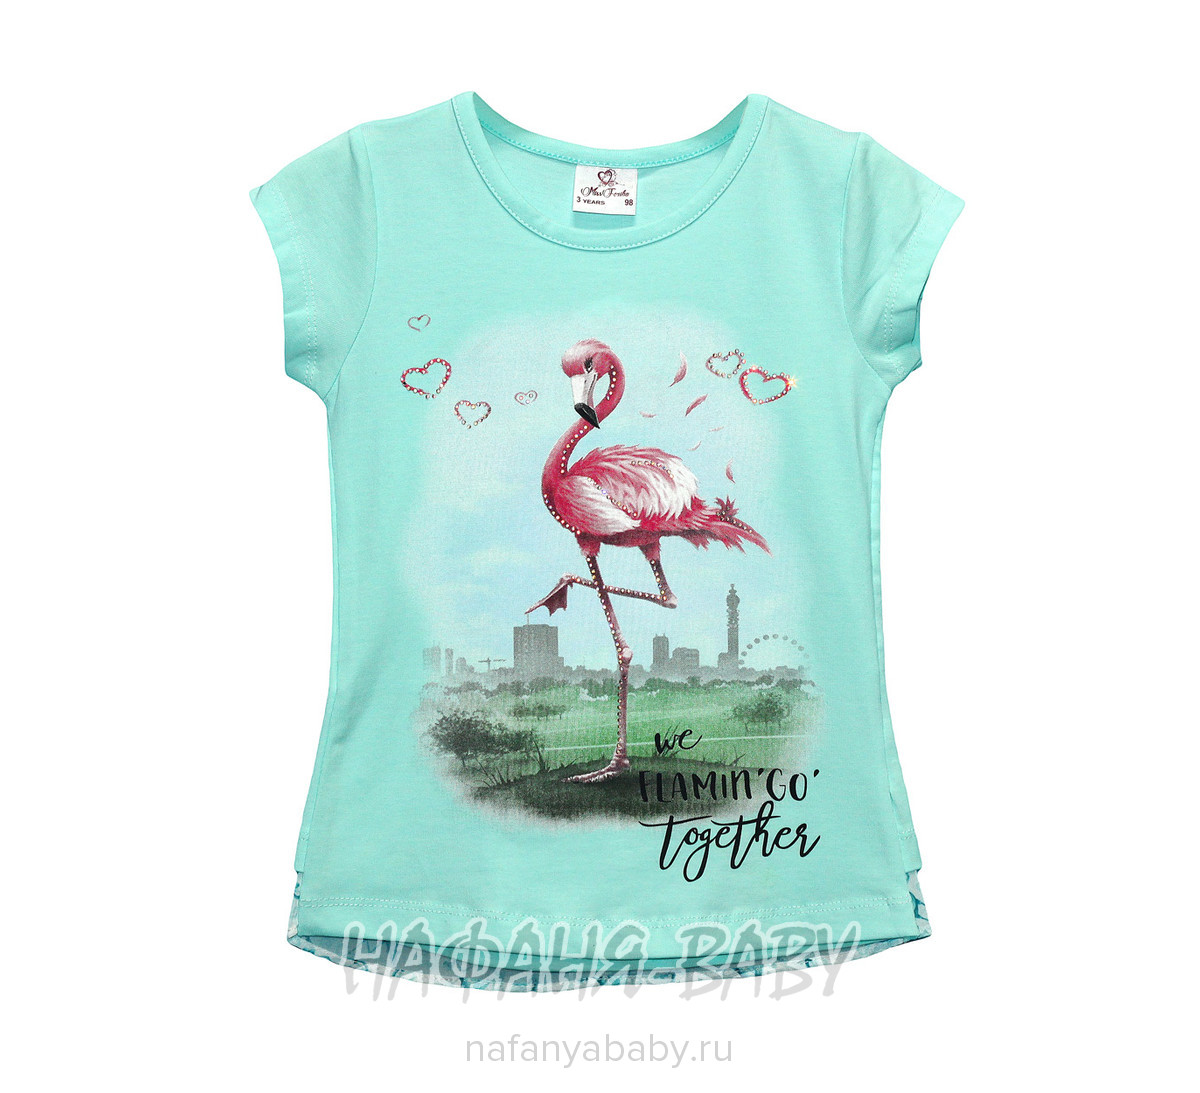 Детская футболка Miss Feriha арт: 705, 5-9 лет, 1-4 года, оптом Турция